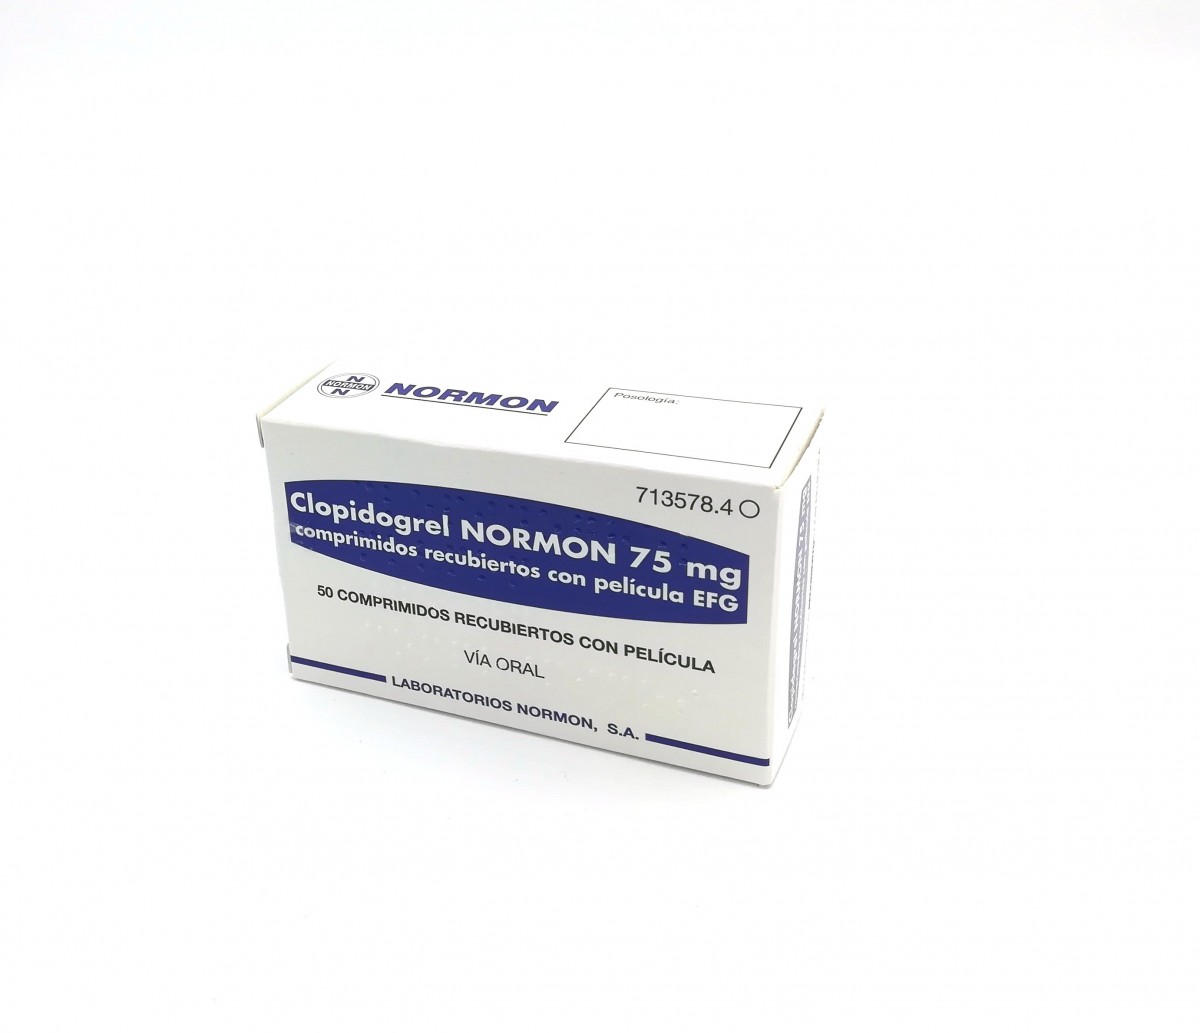 CLOPIDOGREL NORMON 75 mg COMPRIMIDOS RECUBIERTOS CON PELICULA EFG,84 comprimidos fotografía del envase.